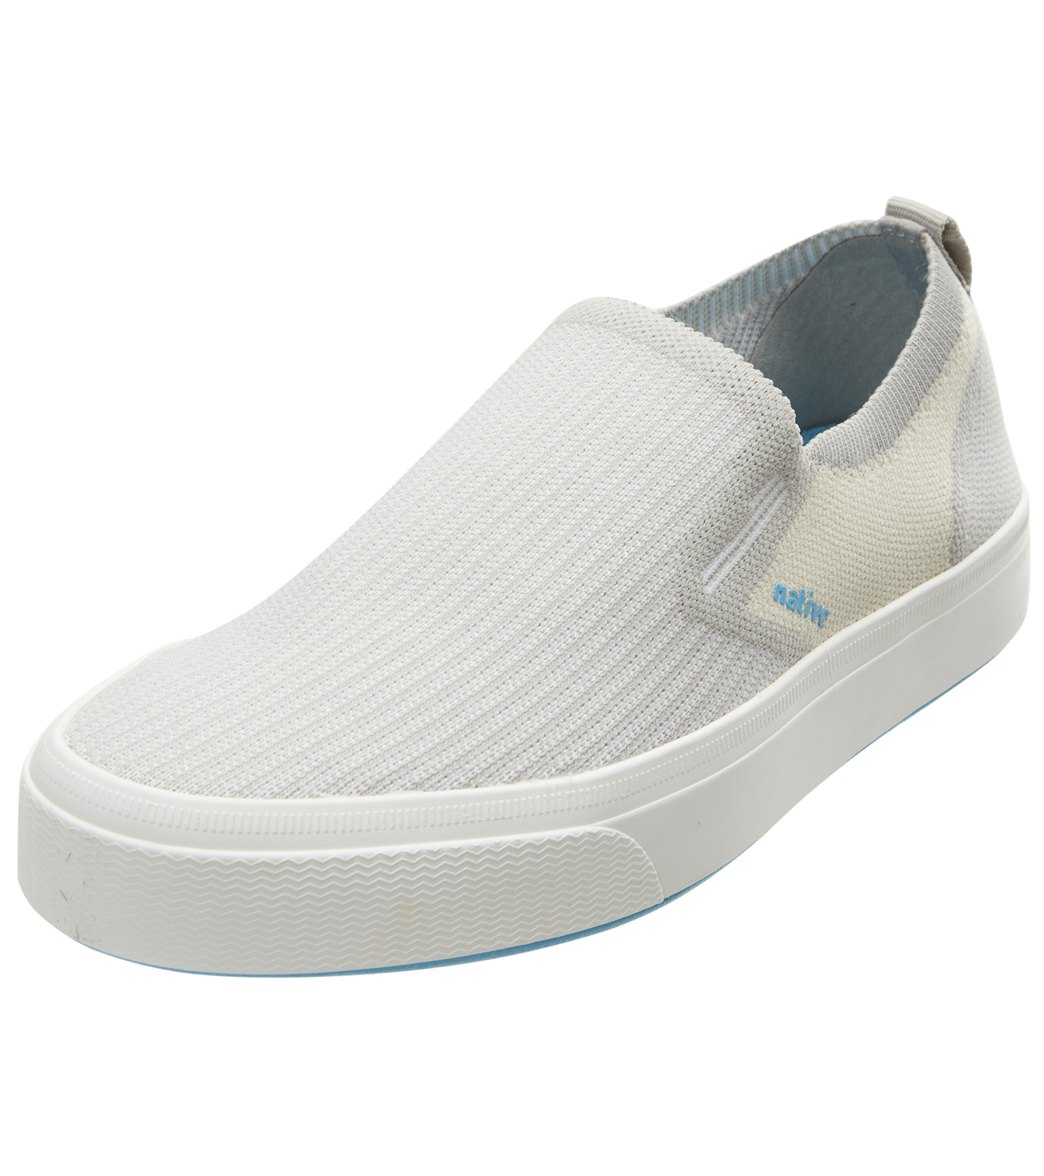 Native Miles 2.0 Liteknit Shoes - Pigeon Grey/Bone White/Shell White W7/M5 - Swimoutlet.com